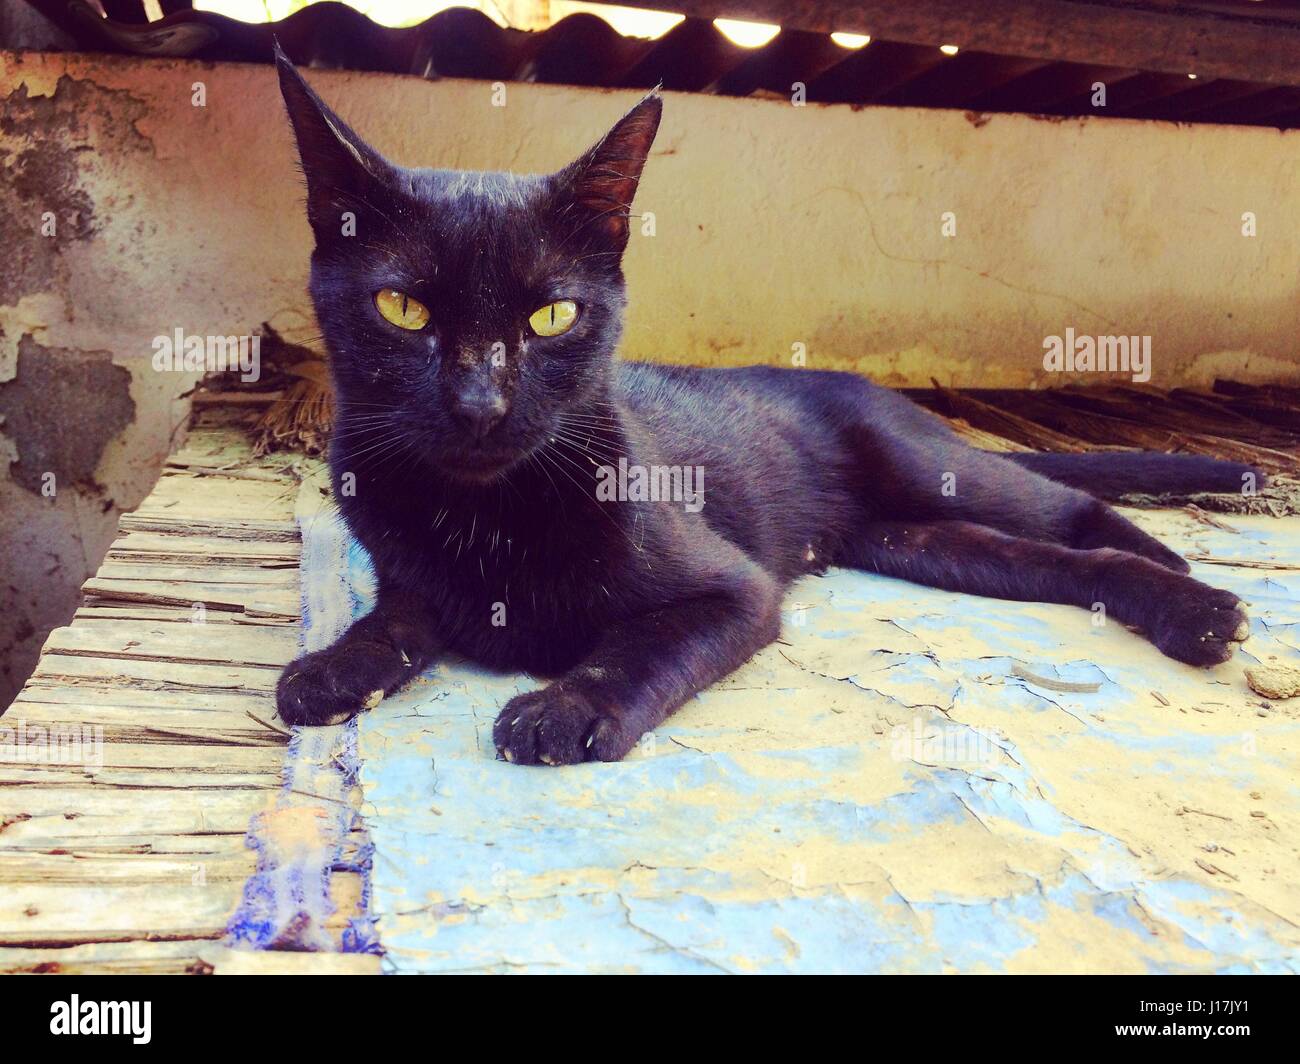 Gatto nero con gli occhi gialli giacente sul tetto a fissare la fotocamera Foto Stock